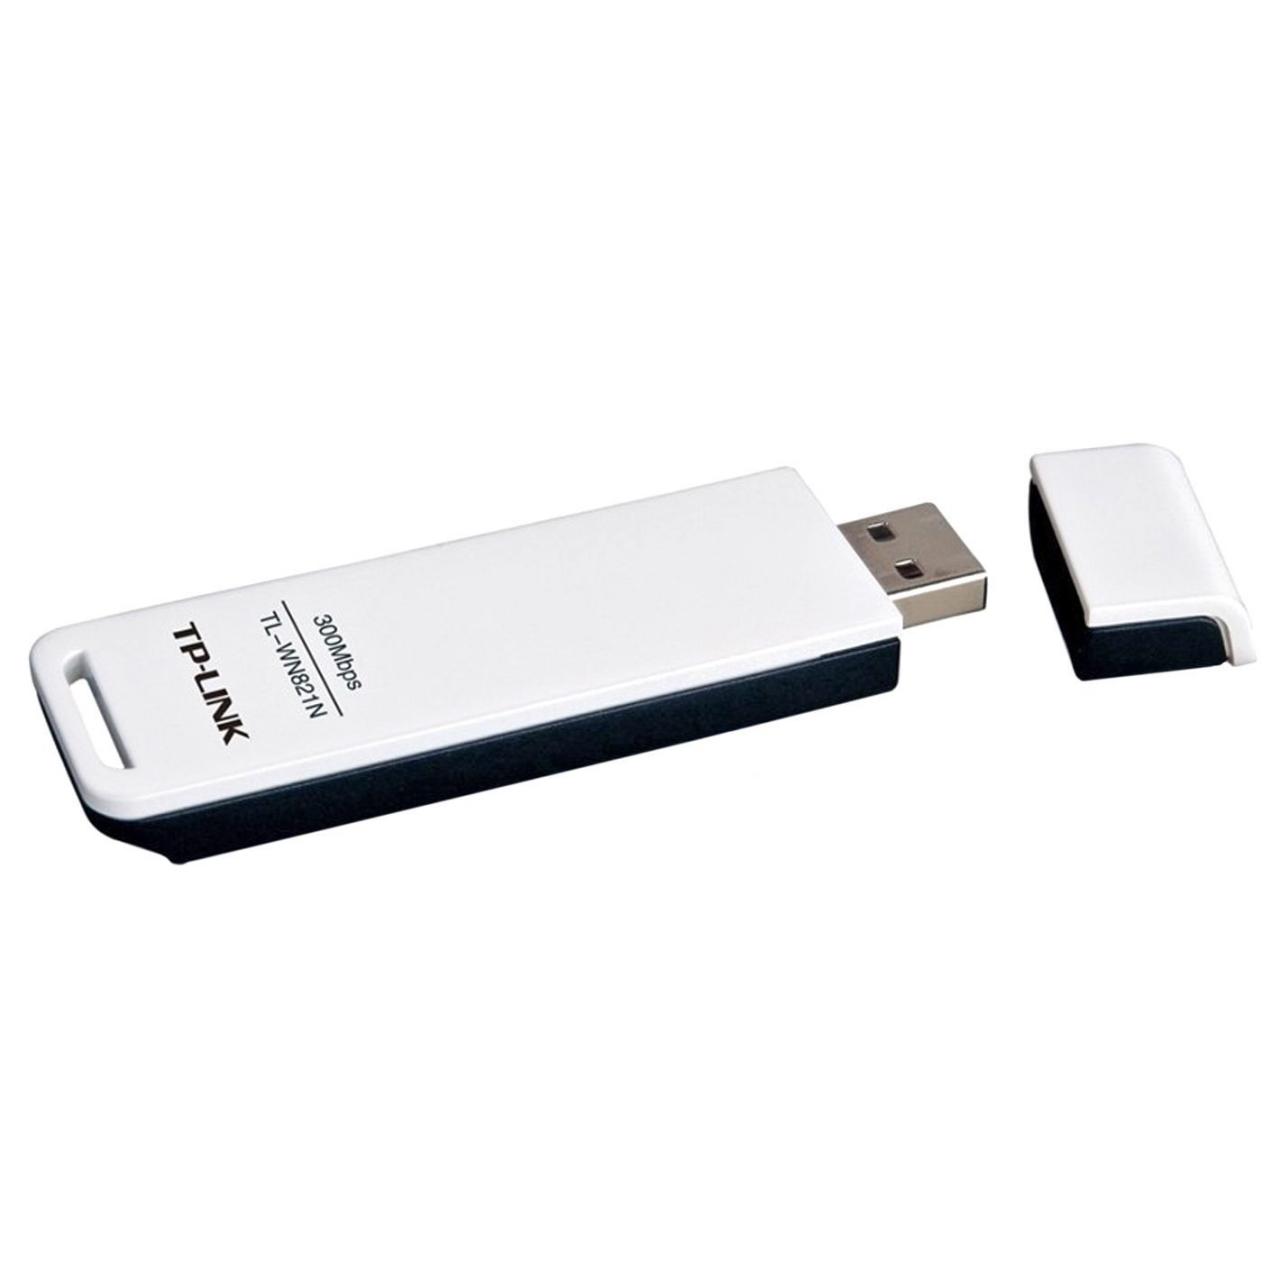 WLAN-Stick 300 MBit TP-Link TL-WN821N USB